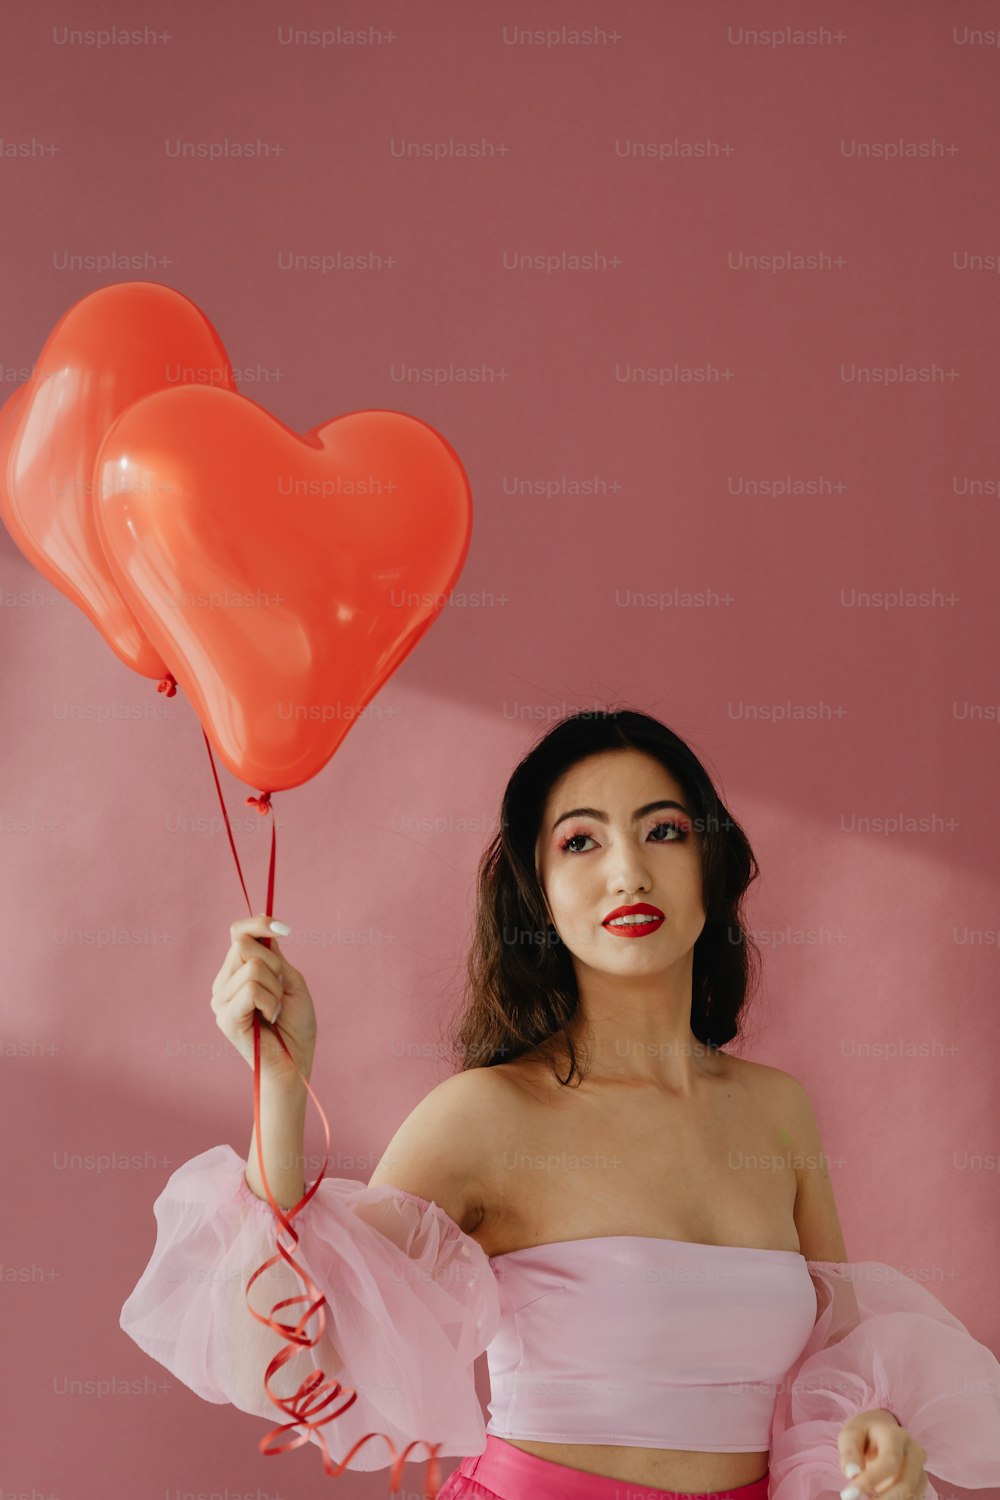 Una mujer con un vestido rosa sosteniendo dos globos en forma de corazón